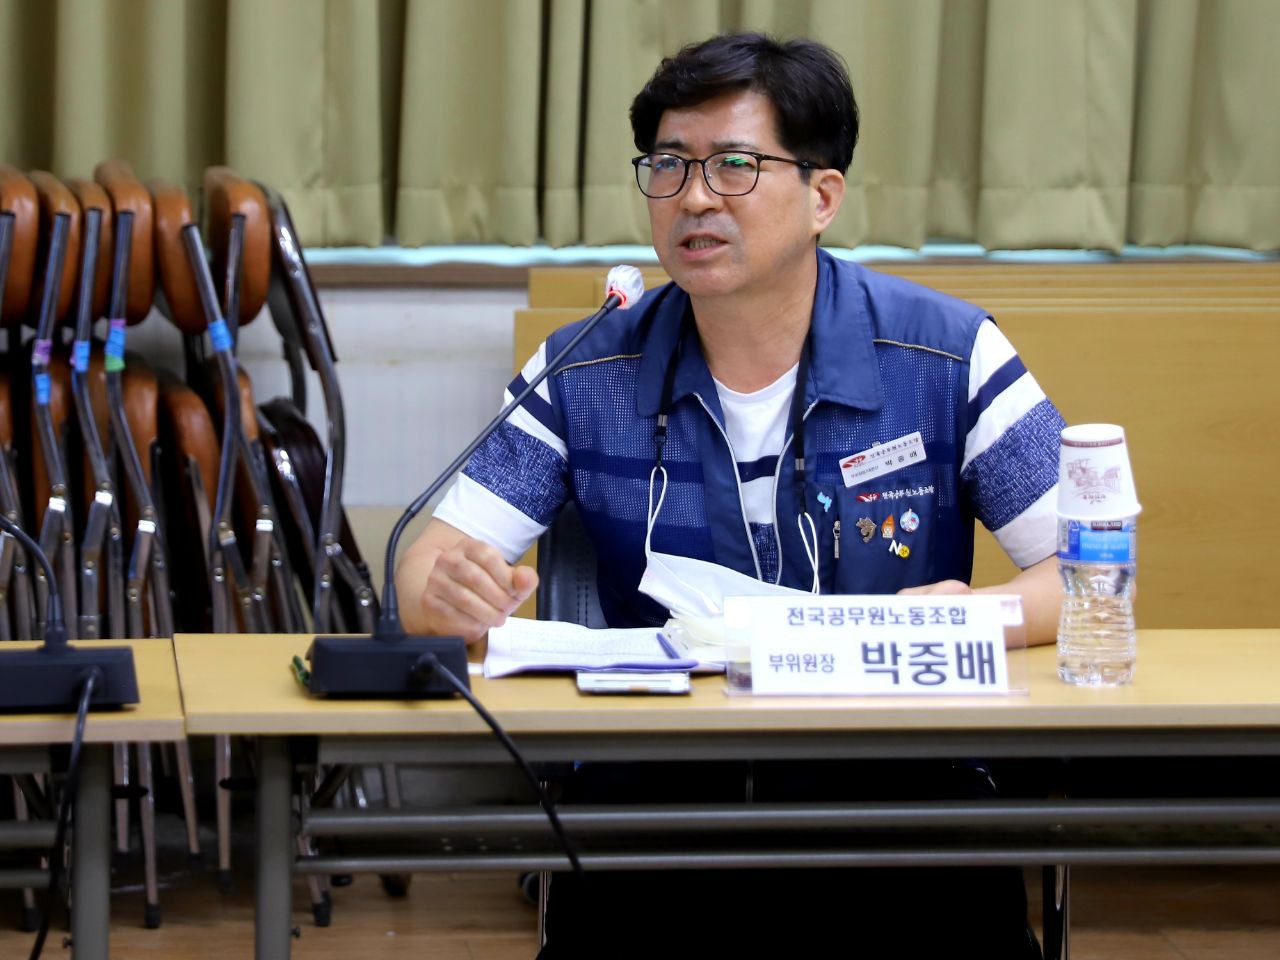 ▲ 공무원노조 박중배 부위원장이 발언하고 있다.